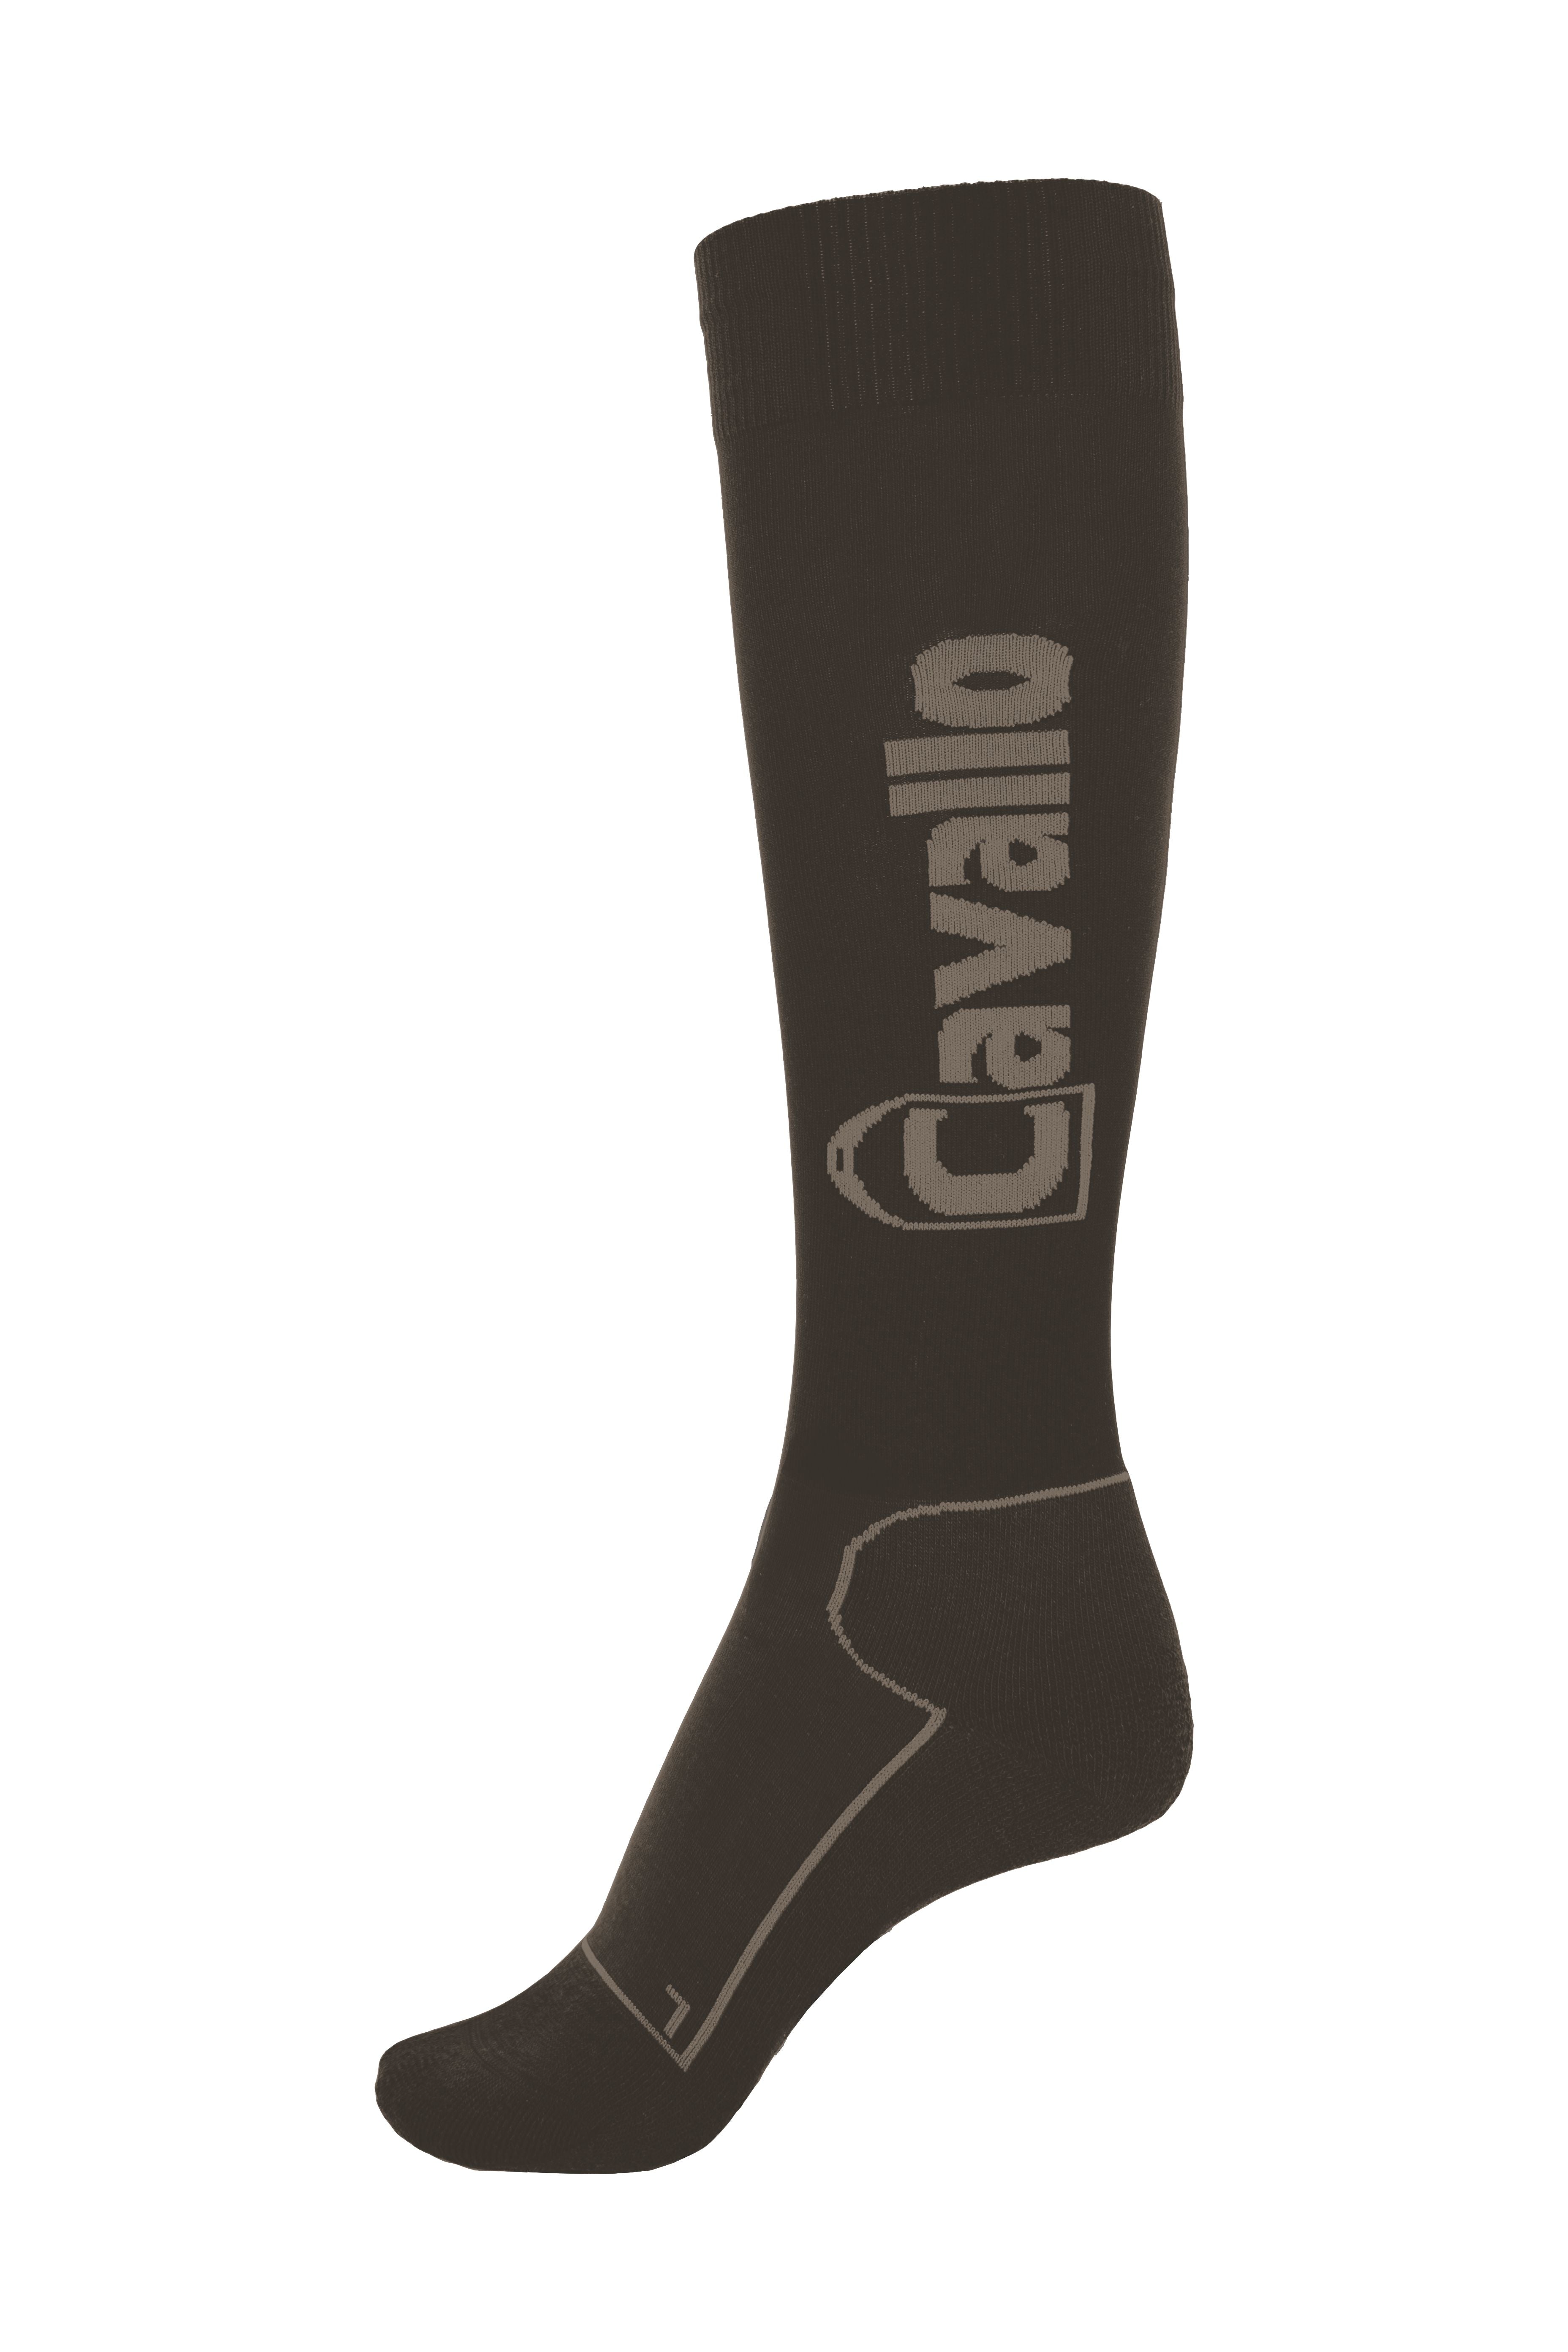 Socken CAVALSIMO - Reitstiefel Kandel - Dein Reitshop